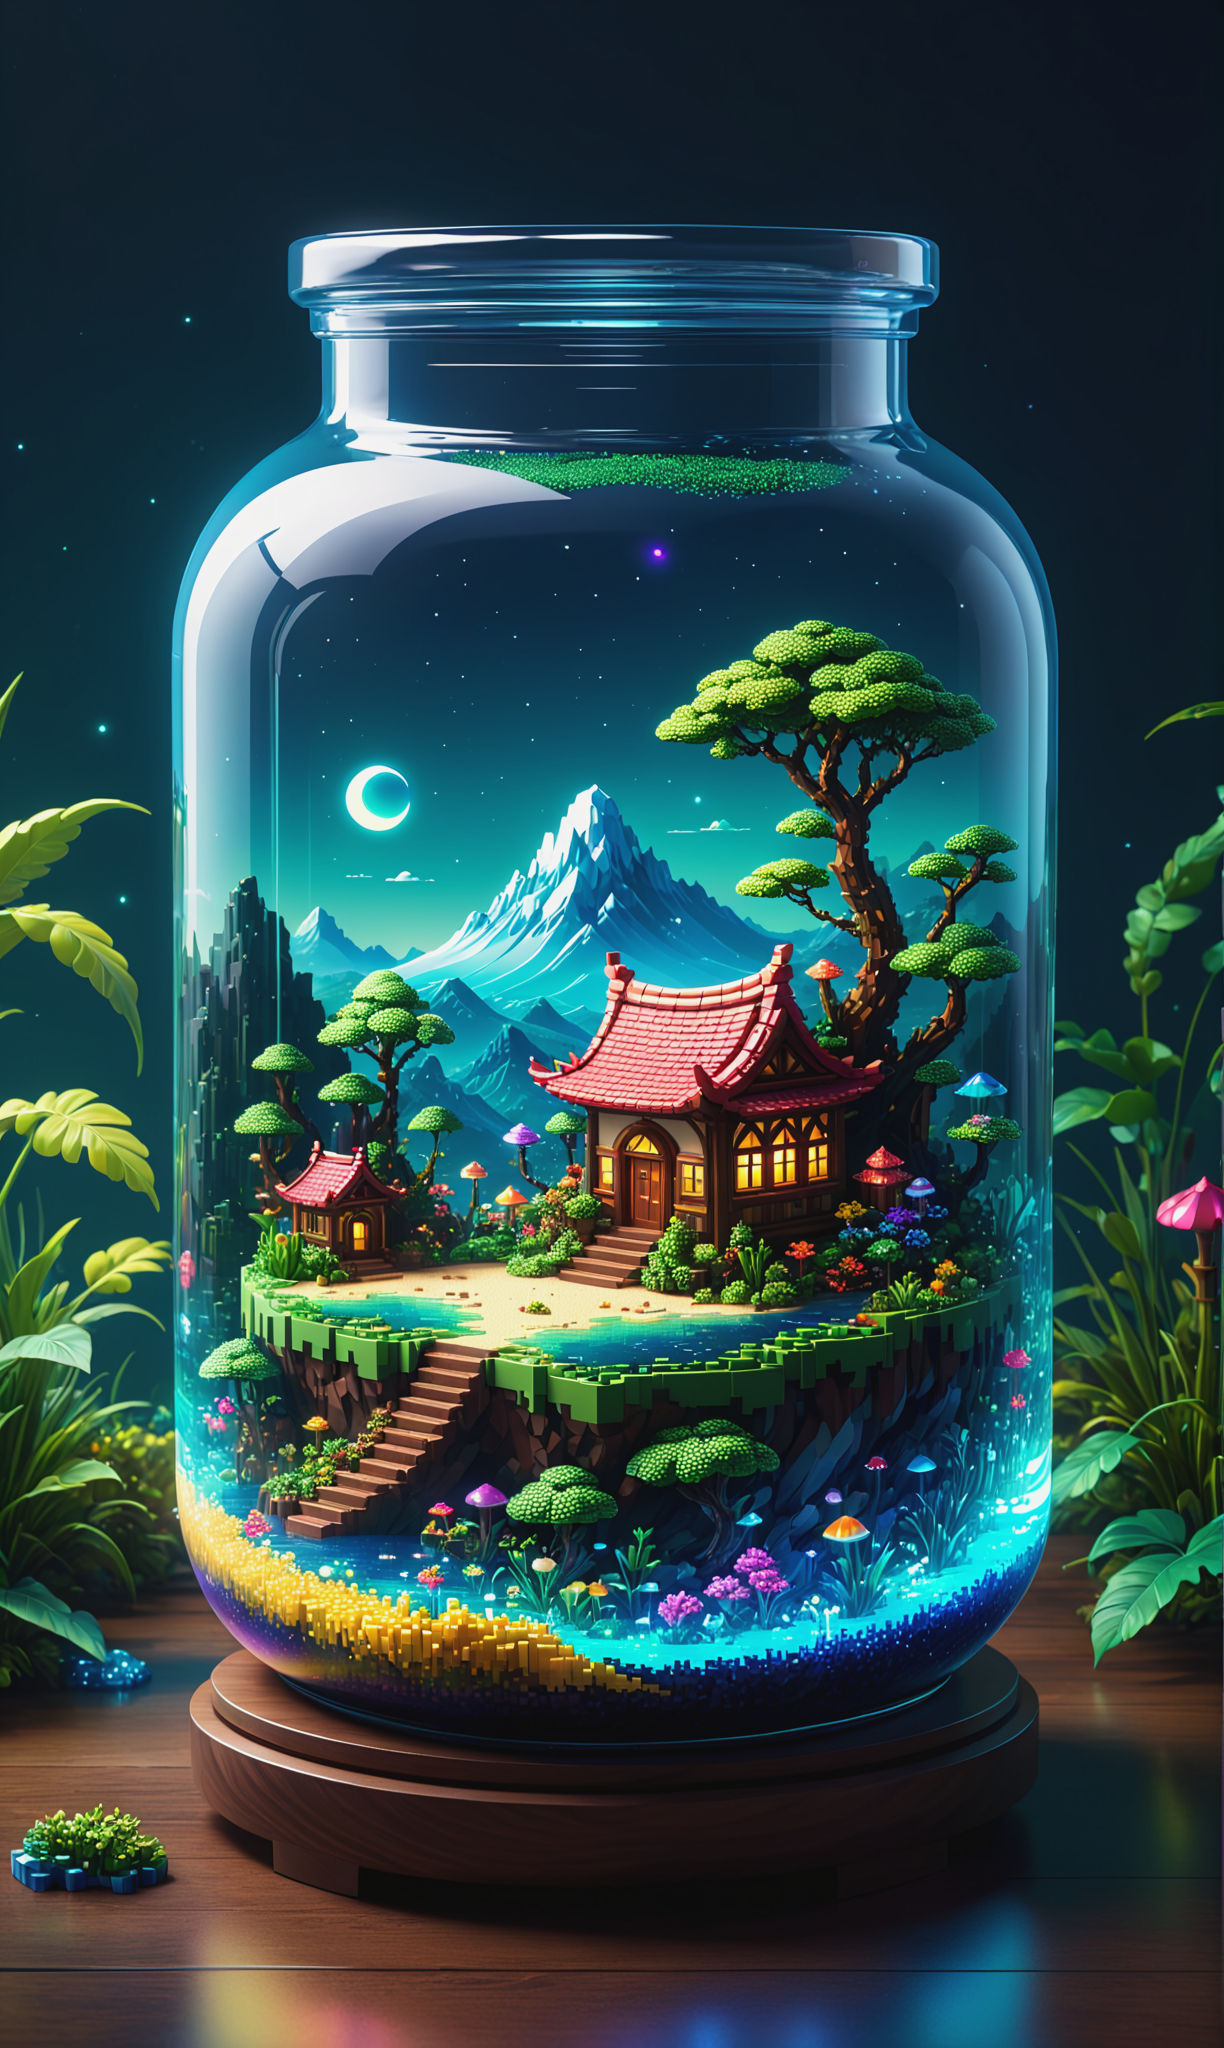 一个封装了奇幻境界的罐子，像素艺术风格，高饱和度，玻璃内包含的迷人景观的鲜艳色调，漂浮的岛屿插图